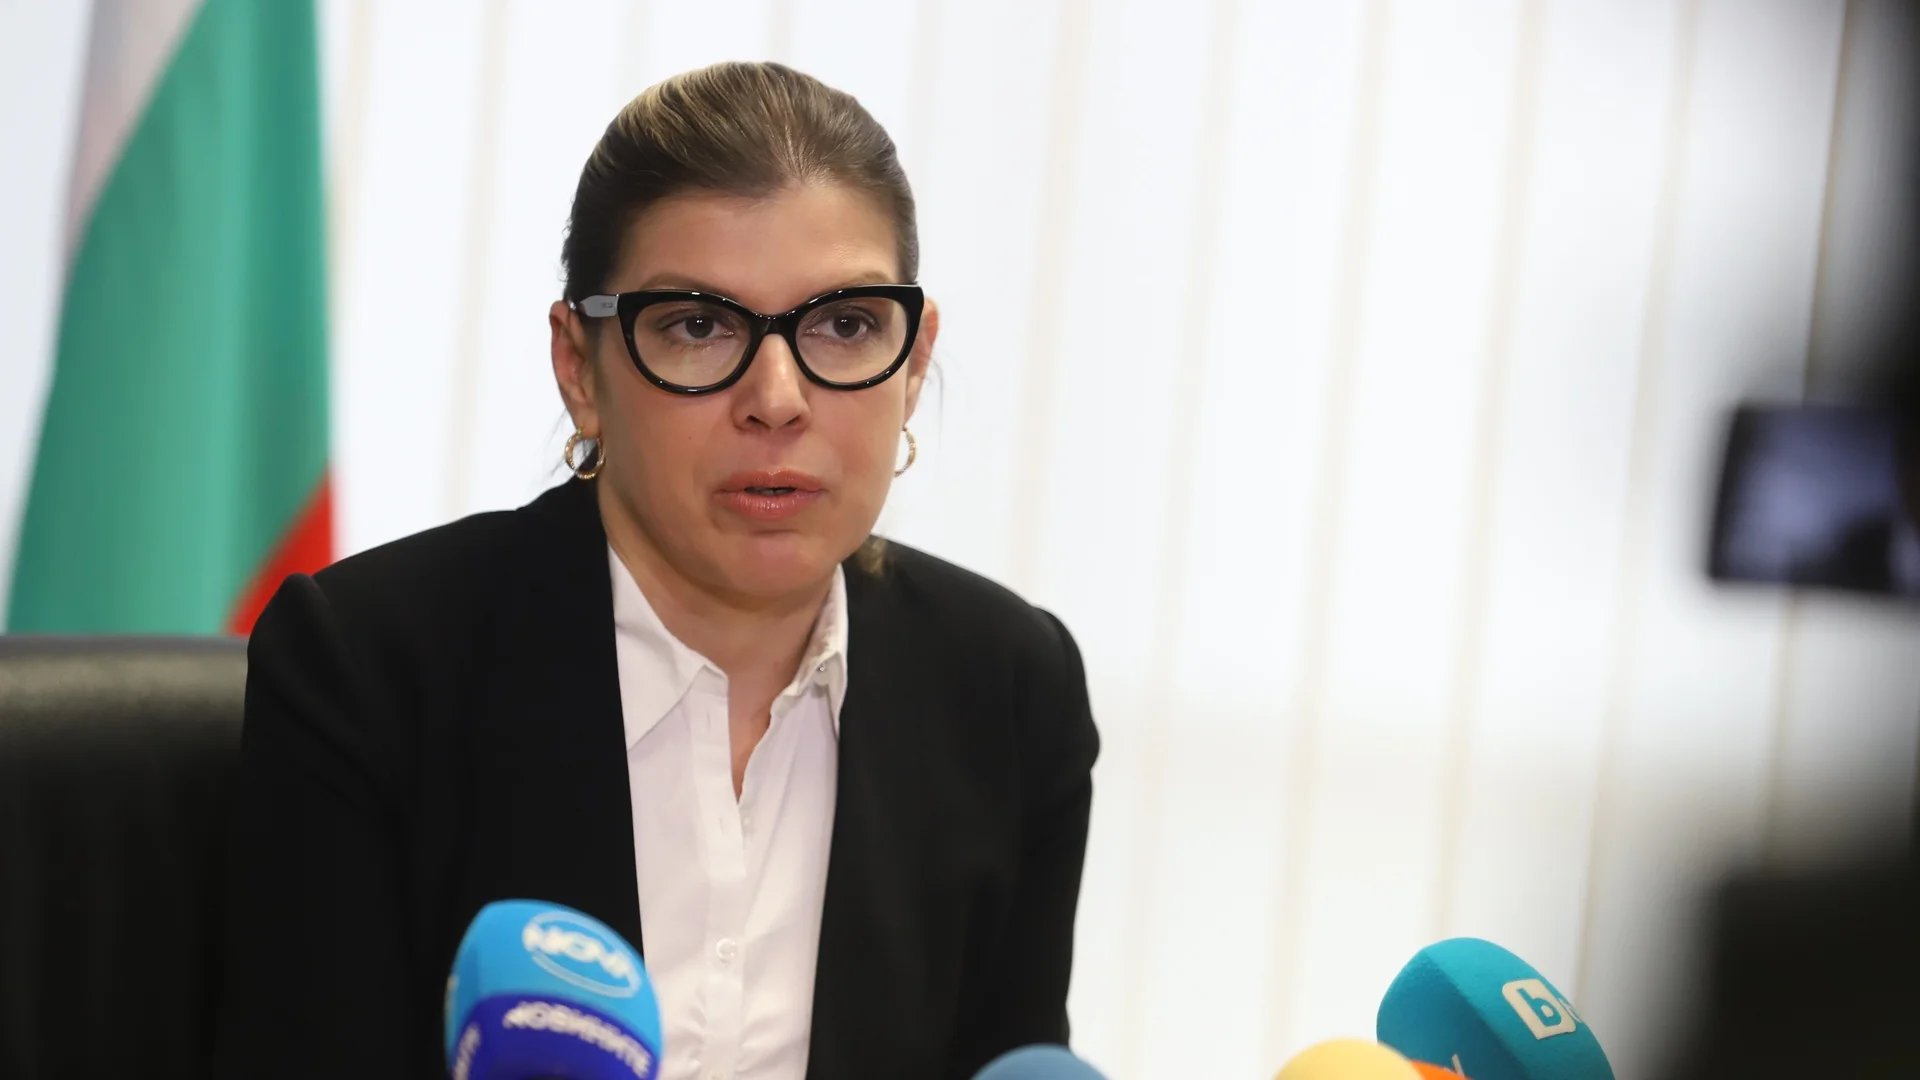 Заради Пепи Еврото: Поискаха дисциплинарка срещу прокурор Невена Зартова